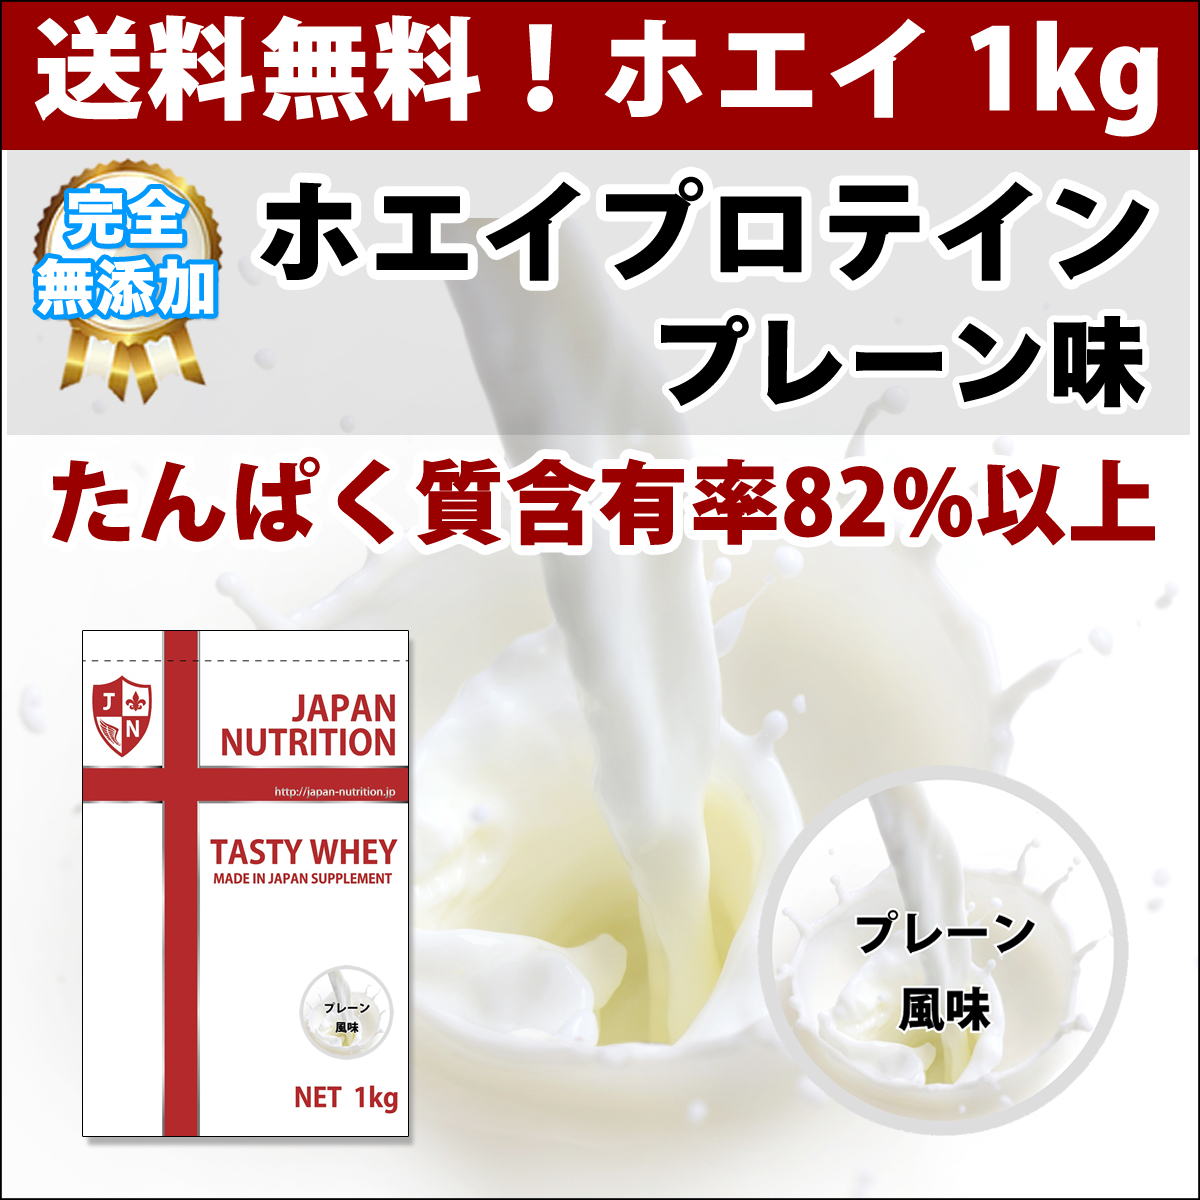  бесплатная доставка *kospa сильнейший cывороточный протеин 1kg*WPC100%* белок качество . иметь количество 82%! сделано в Японии если ... высокое качество низкий цена!!!